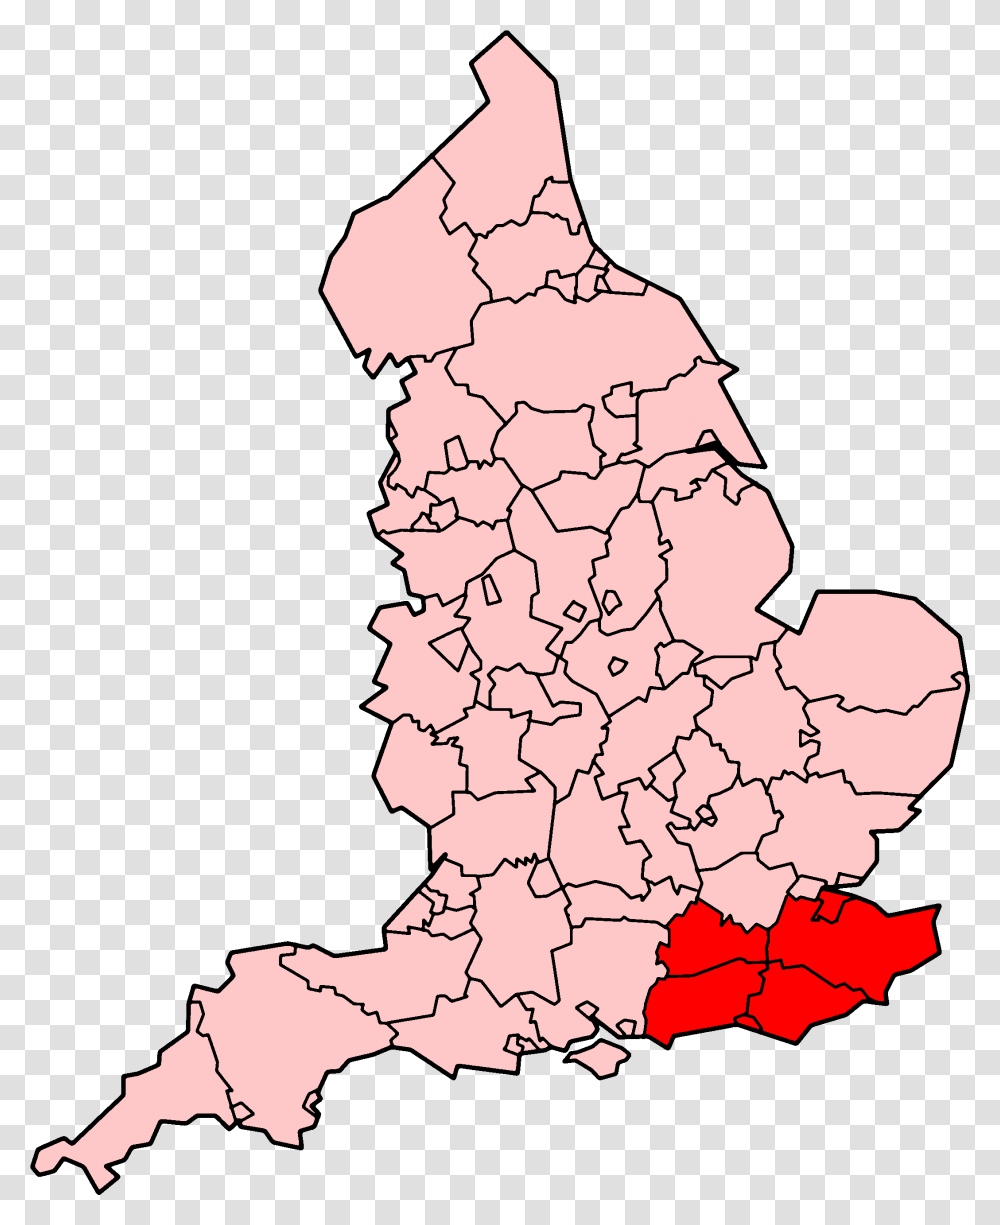 South East Coast Ambulance Service Map West Midlands Ambulance Area, Diagram, Plot, Atlas, Person Transparent Png